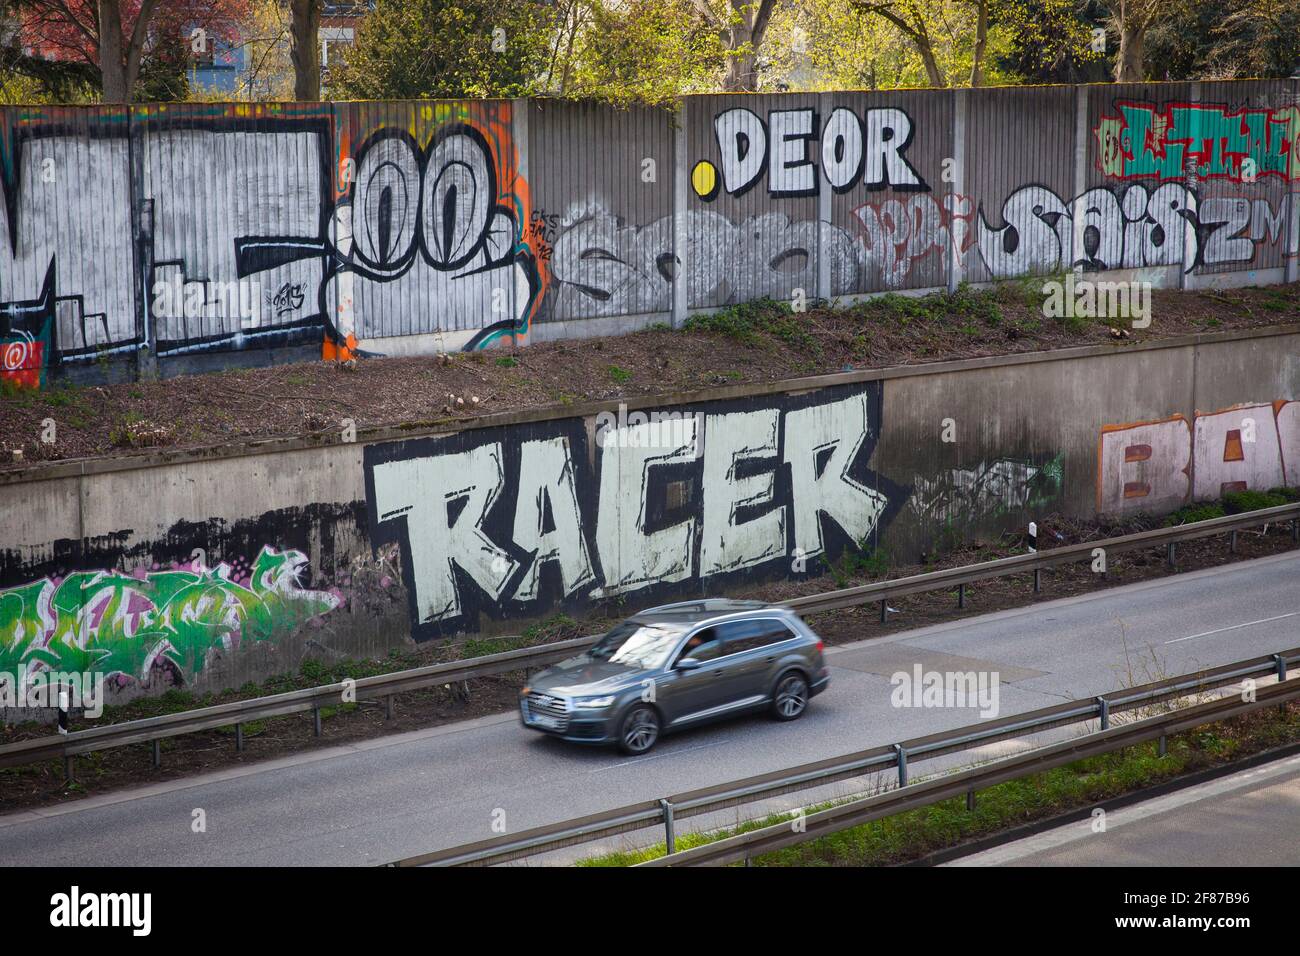 Graffiti auf Schallmauer der Autobahn A 57 im Bezirk Neu-Ehrenfeld, Köln, Deutschland. Graffitis an der Schallschutzwand der Autobahn A 57 Stockfoto